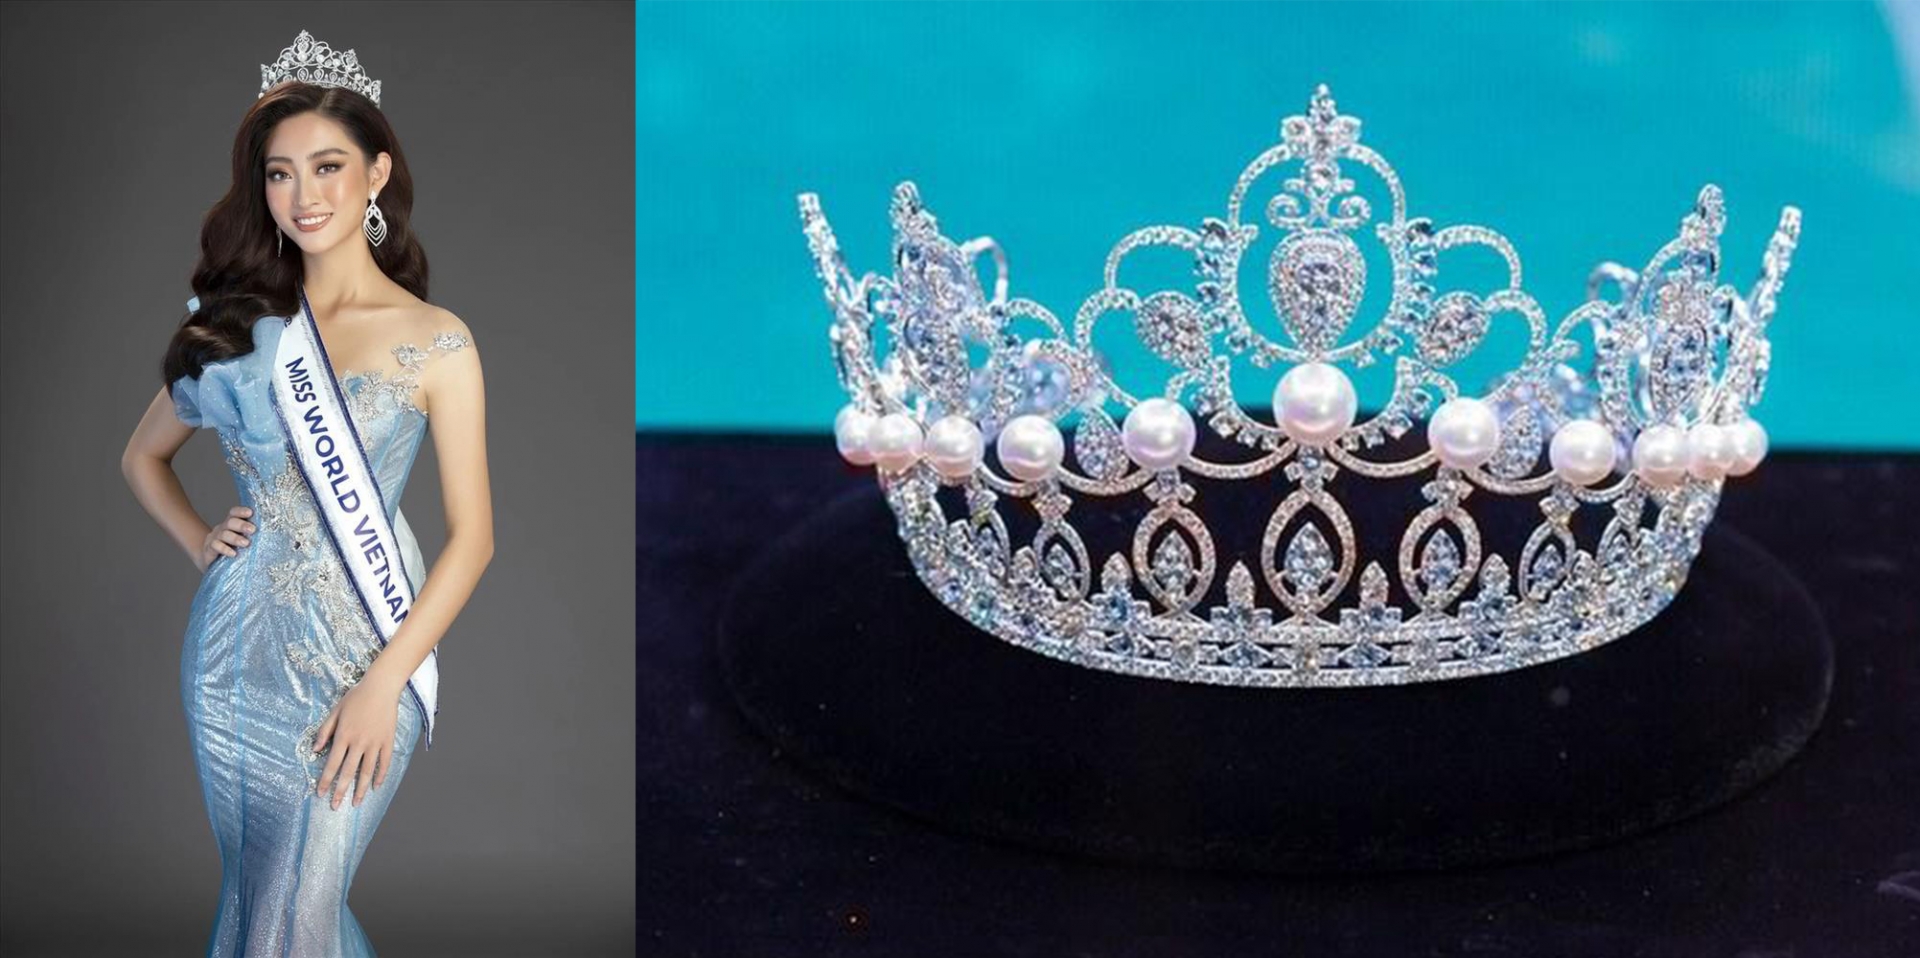 8 vương miện đắt giá nhất lịch sử Hoa hậu Việt Nam: Chiếc đắt nhất thuộc về cô Hoa hậu thị phi nhất - Ảnh 6